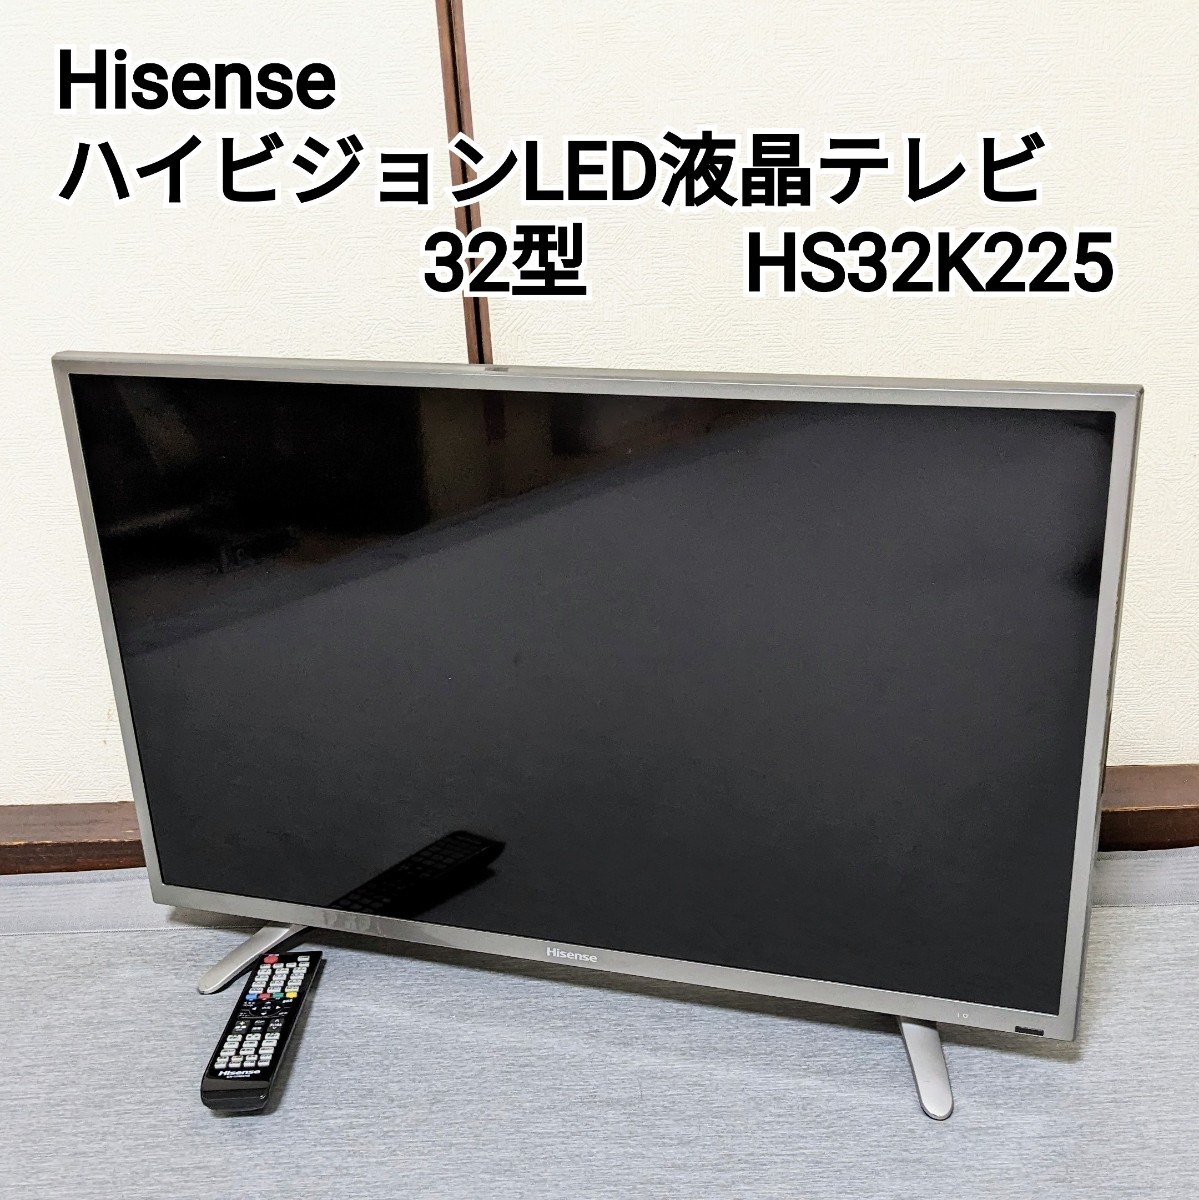 珍しい 動作品 Hisenseハイセンス ハイビジョンLED液晶テレビ 32型 ...